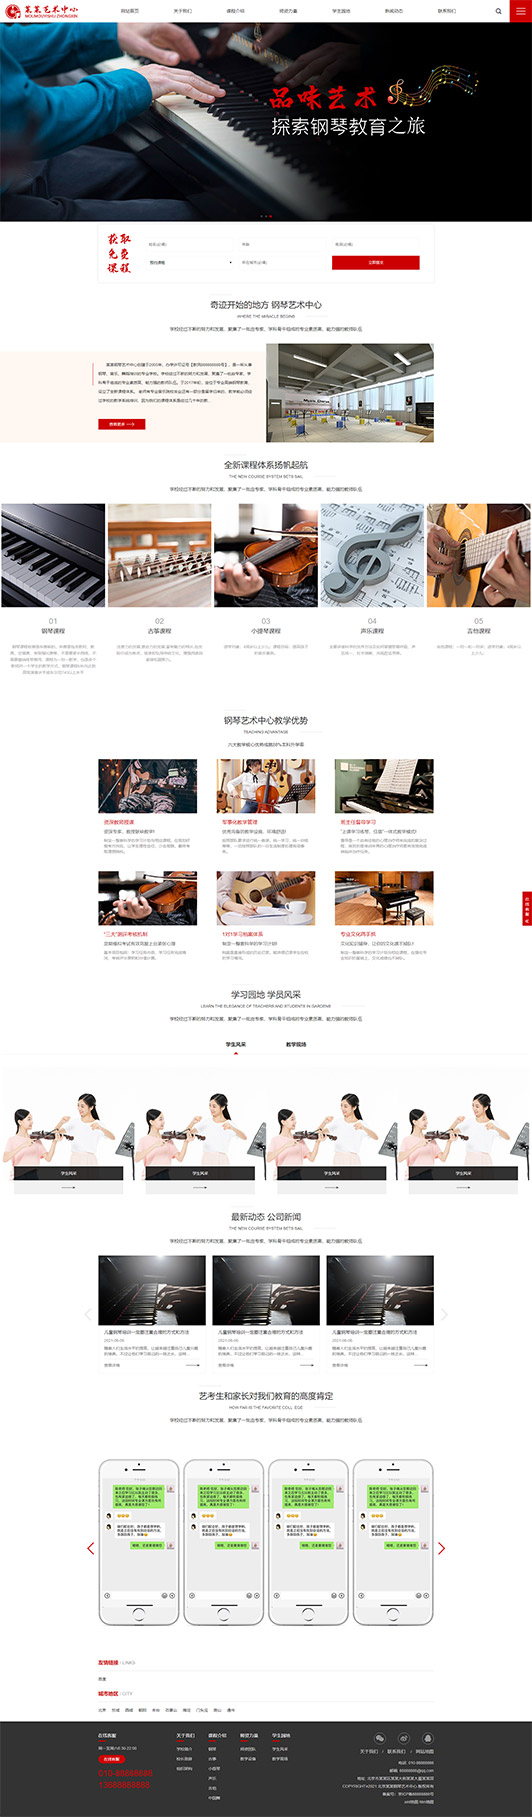 铜川钢琴艺术培训公司响应式企业网站